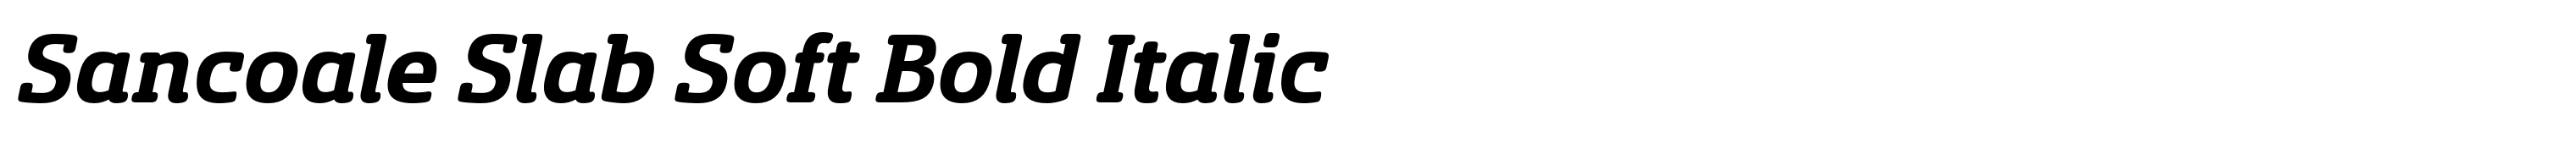 Sancoale Slab Soft Bold Italic